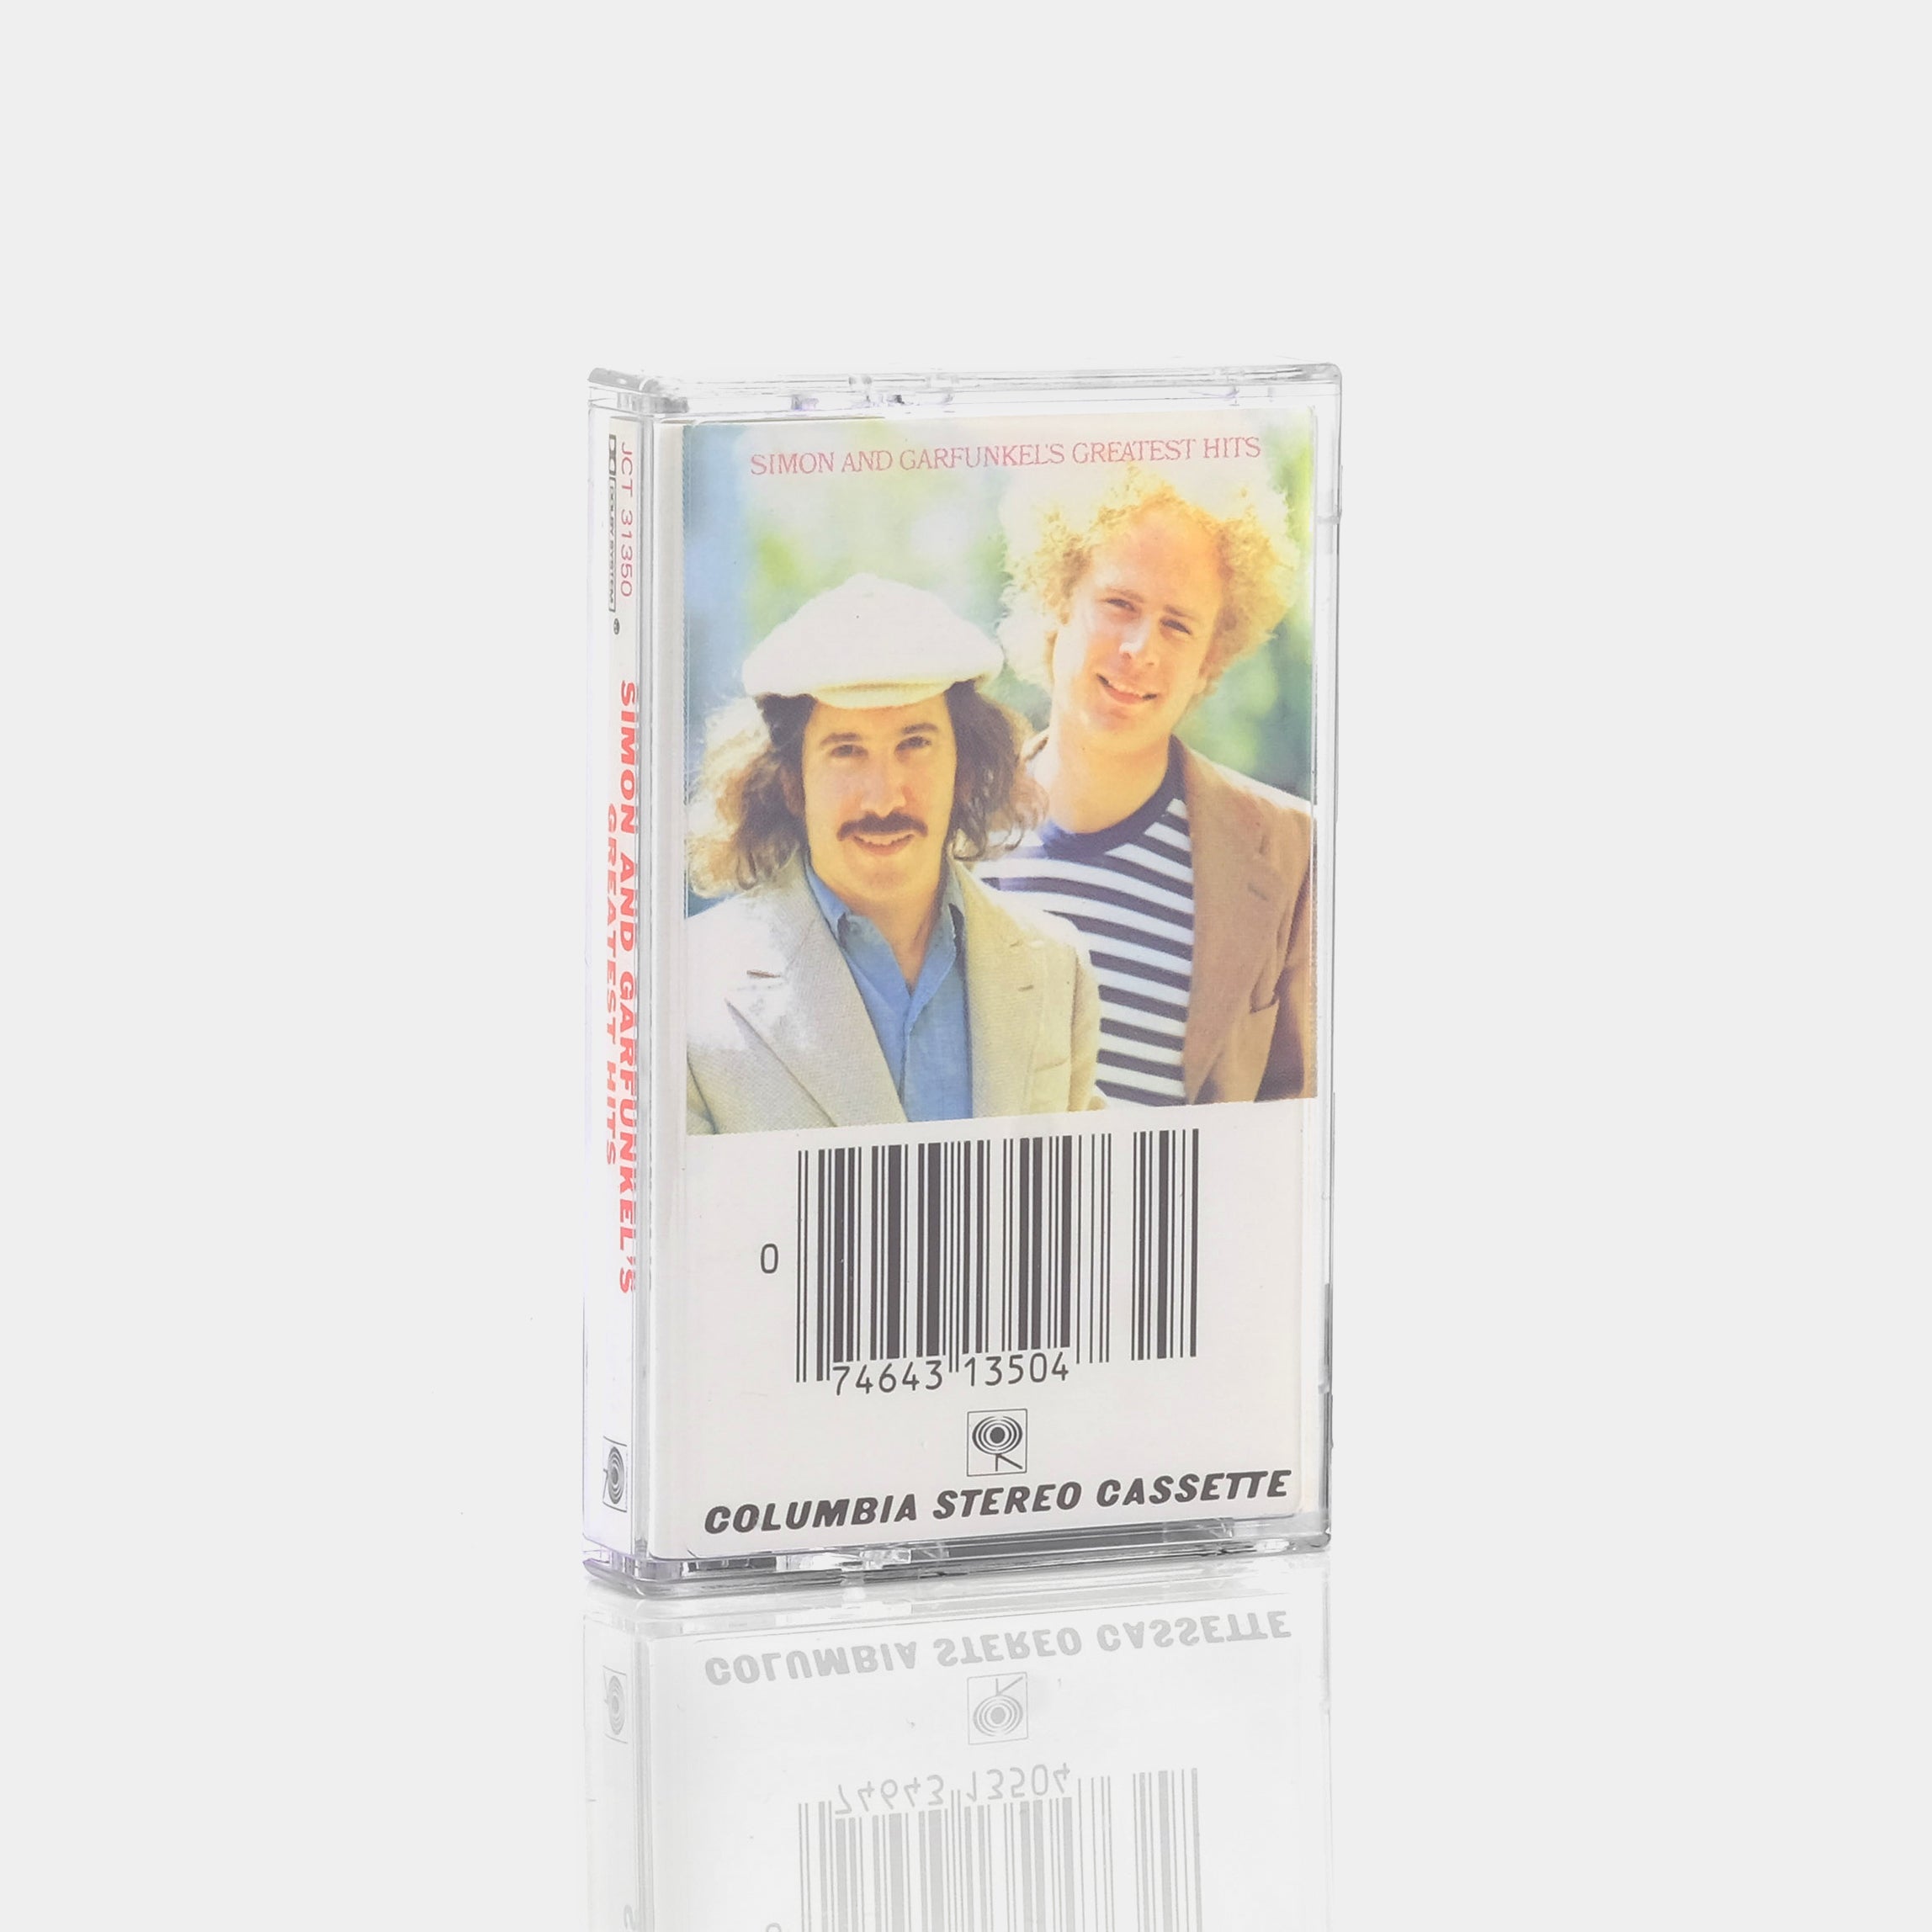 Simon & Garfunkel - Greatest Hits Cassette Tape